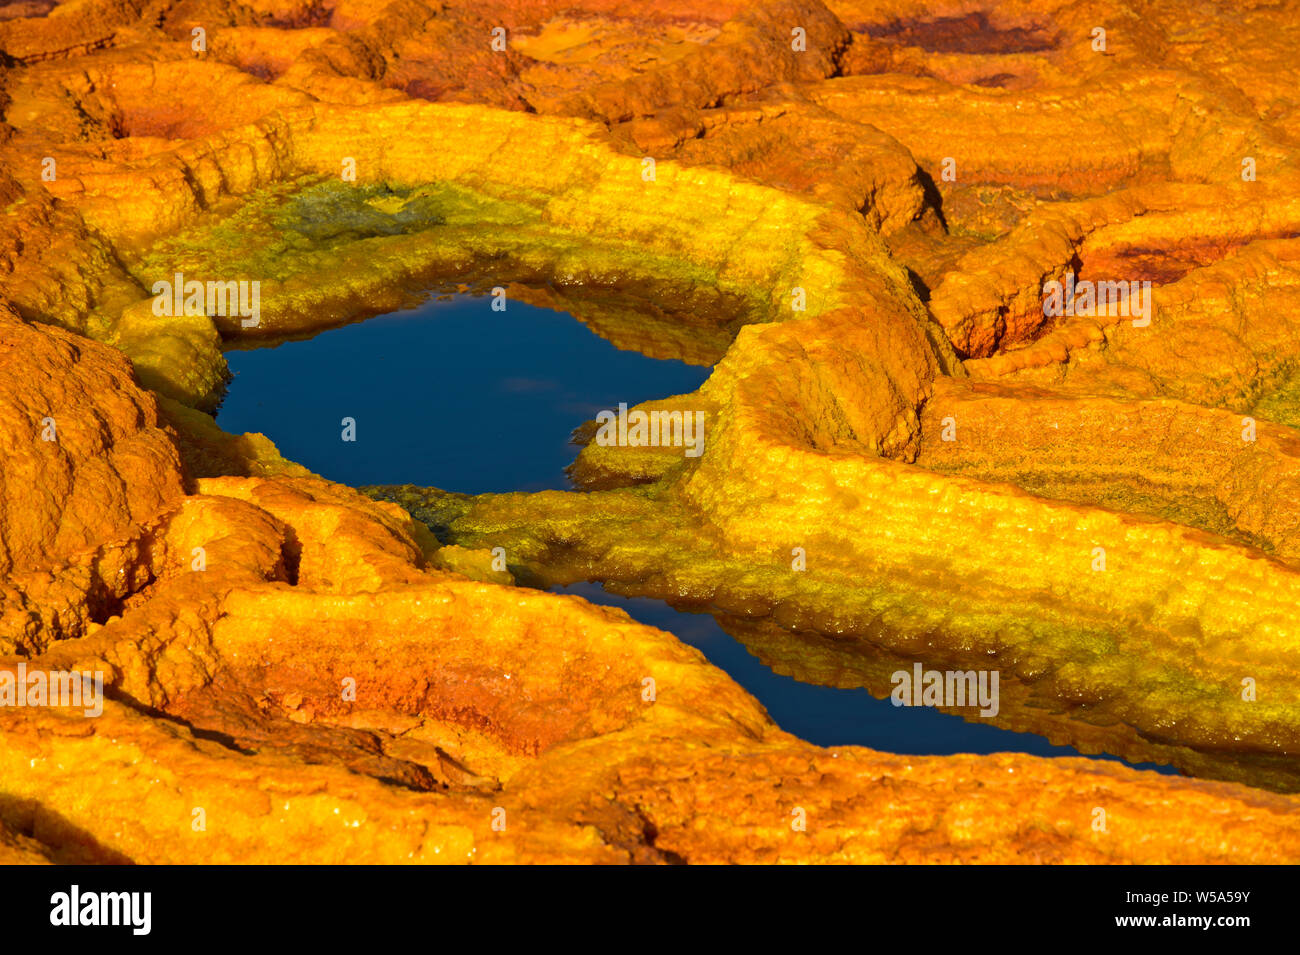 Structures de sel de couleur rouille dans une saumure acide le champ géothermique de piscine, de dépression Danakil, Dallol, Triangle Afar, Ethiopie Banque D'Images